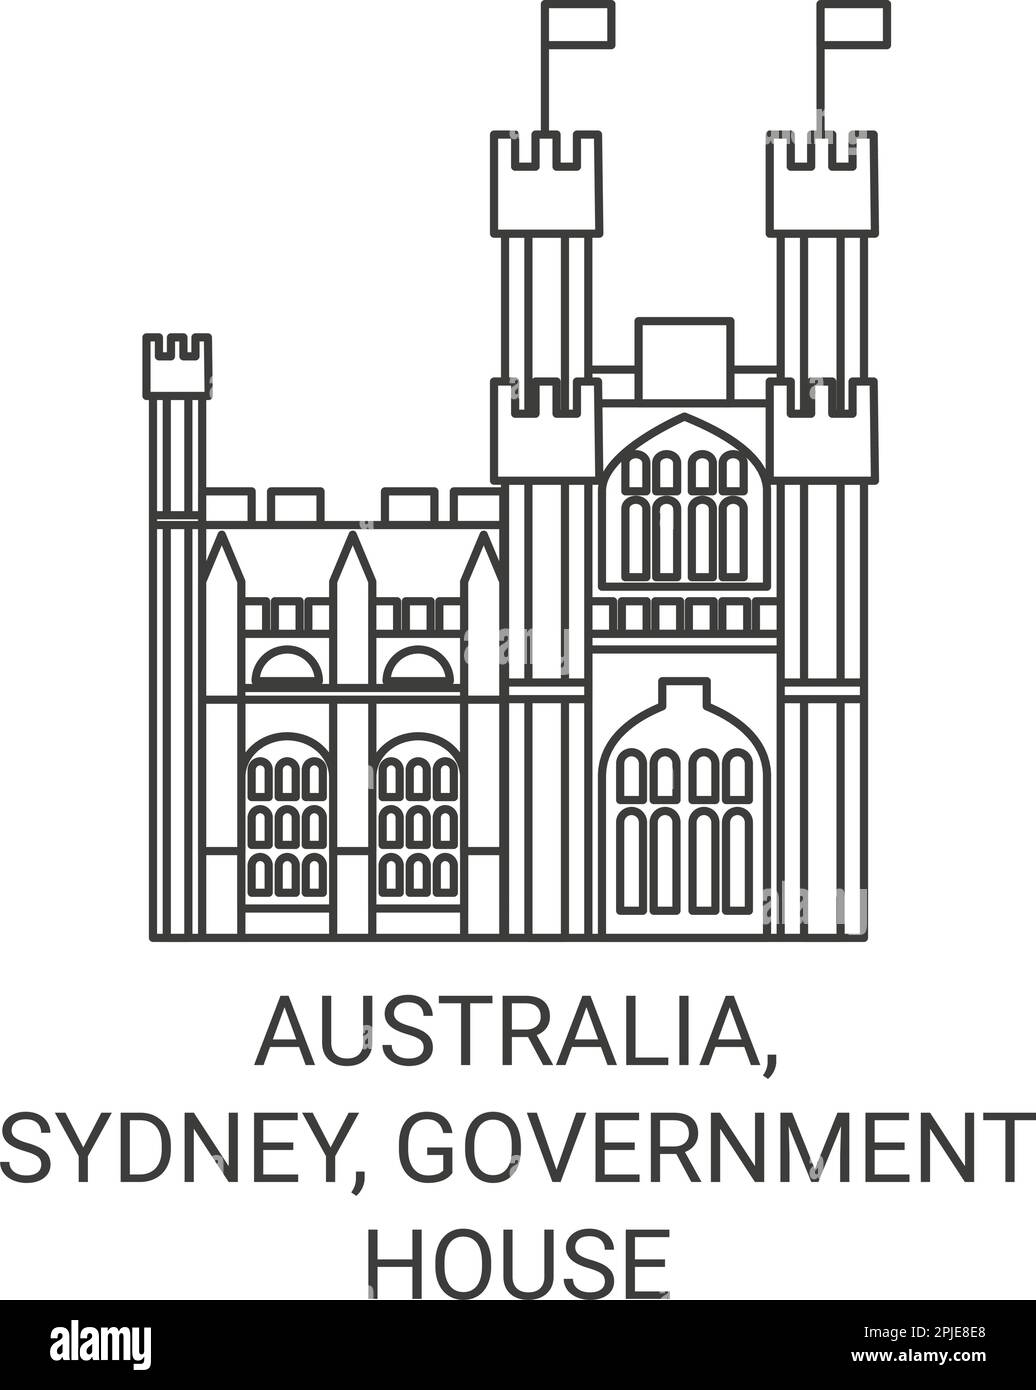 Australia, Sydney, Government House travel landmark vector illustration Stock Vector